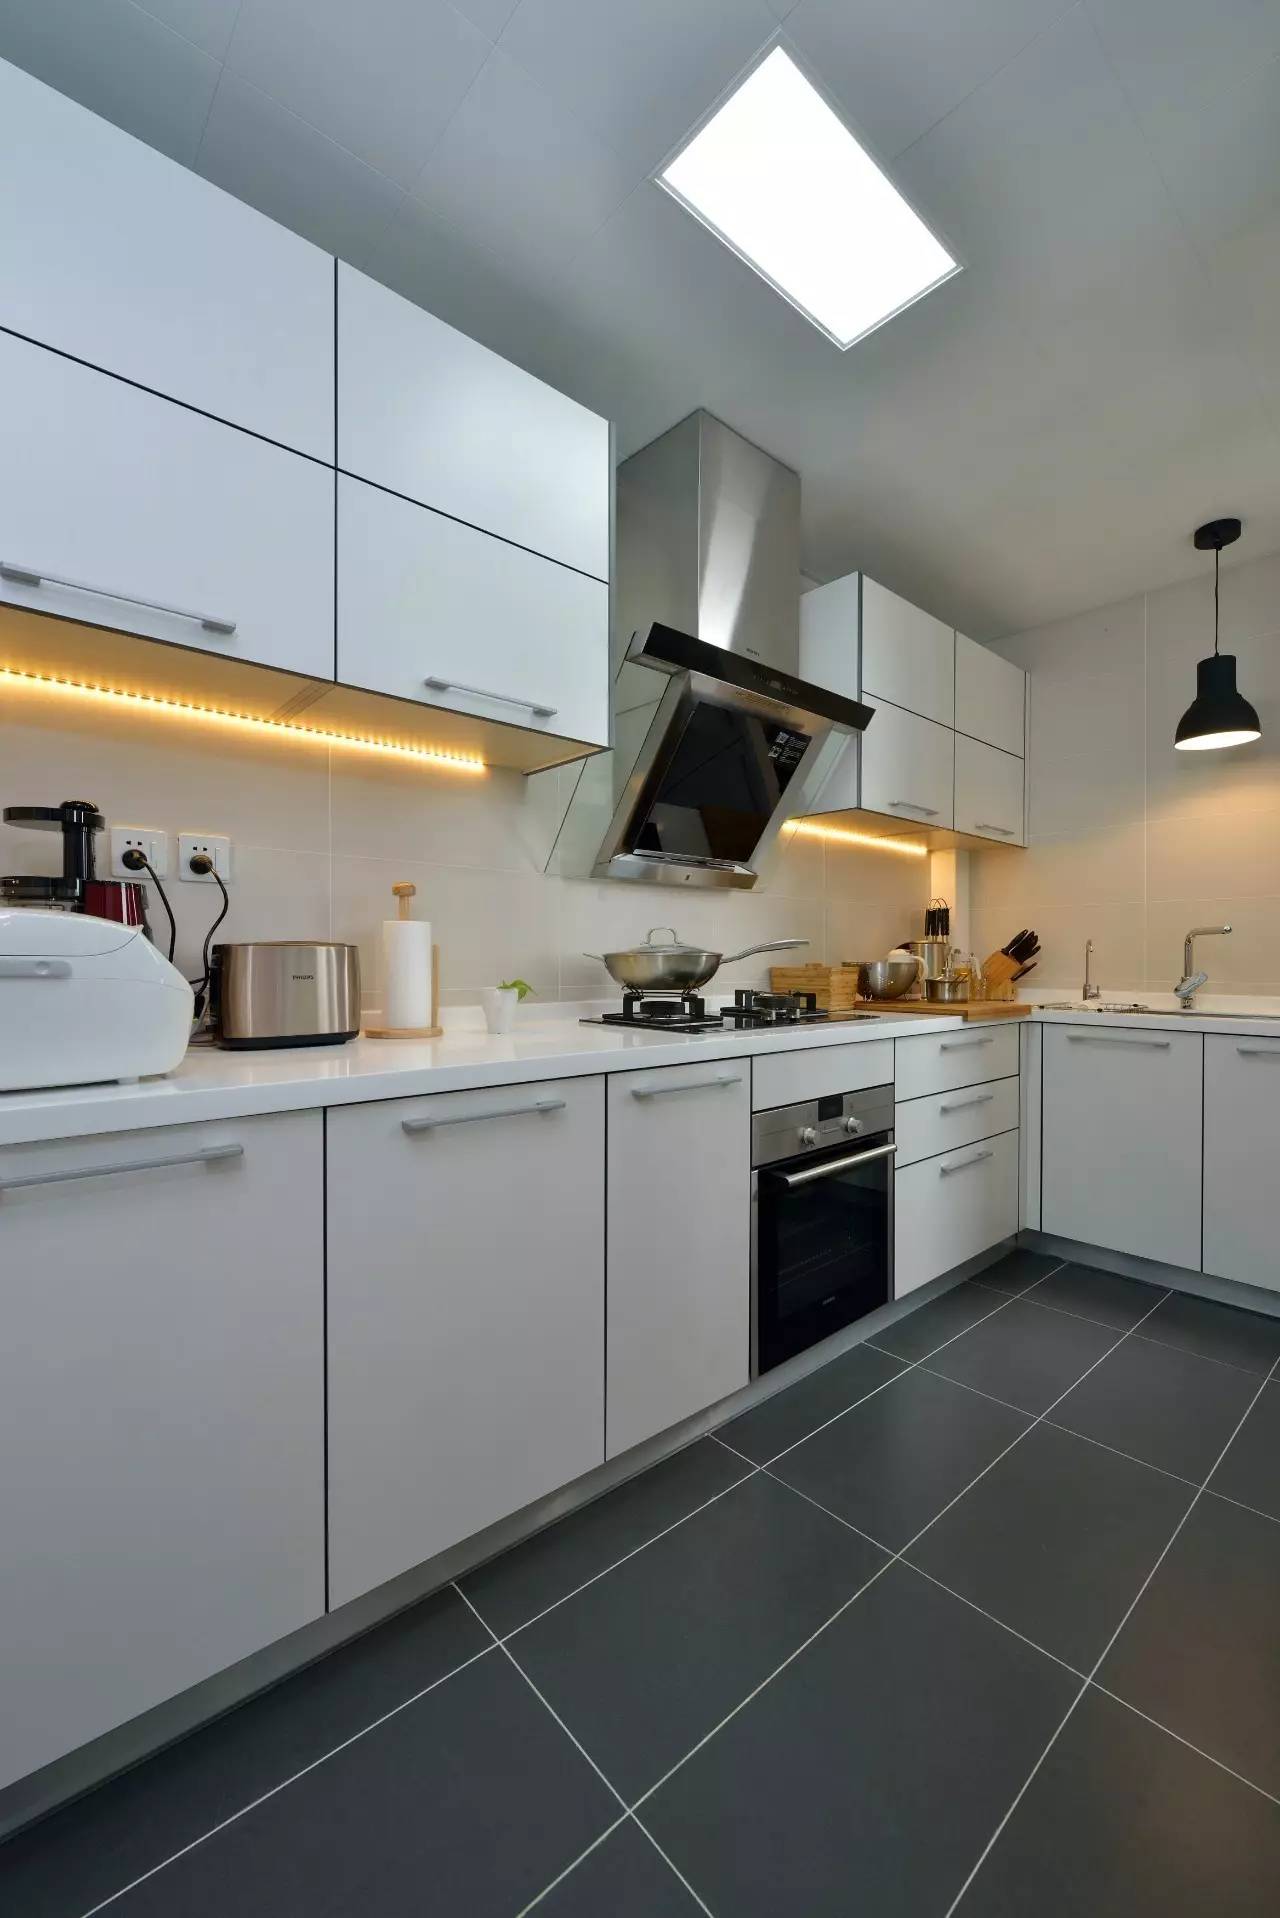 欧式简约风室内设计厨房灶台效果图图片_装饰装修_建筑空间-图行天下素材网